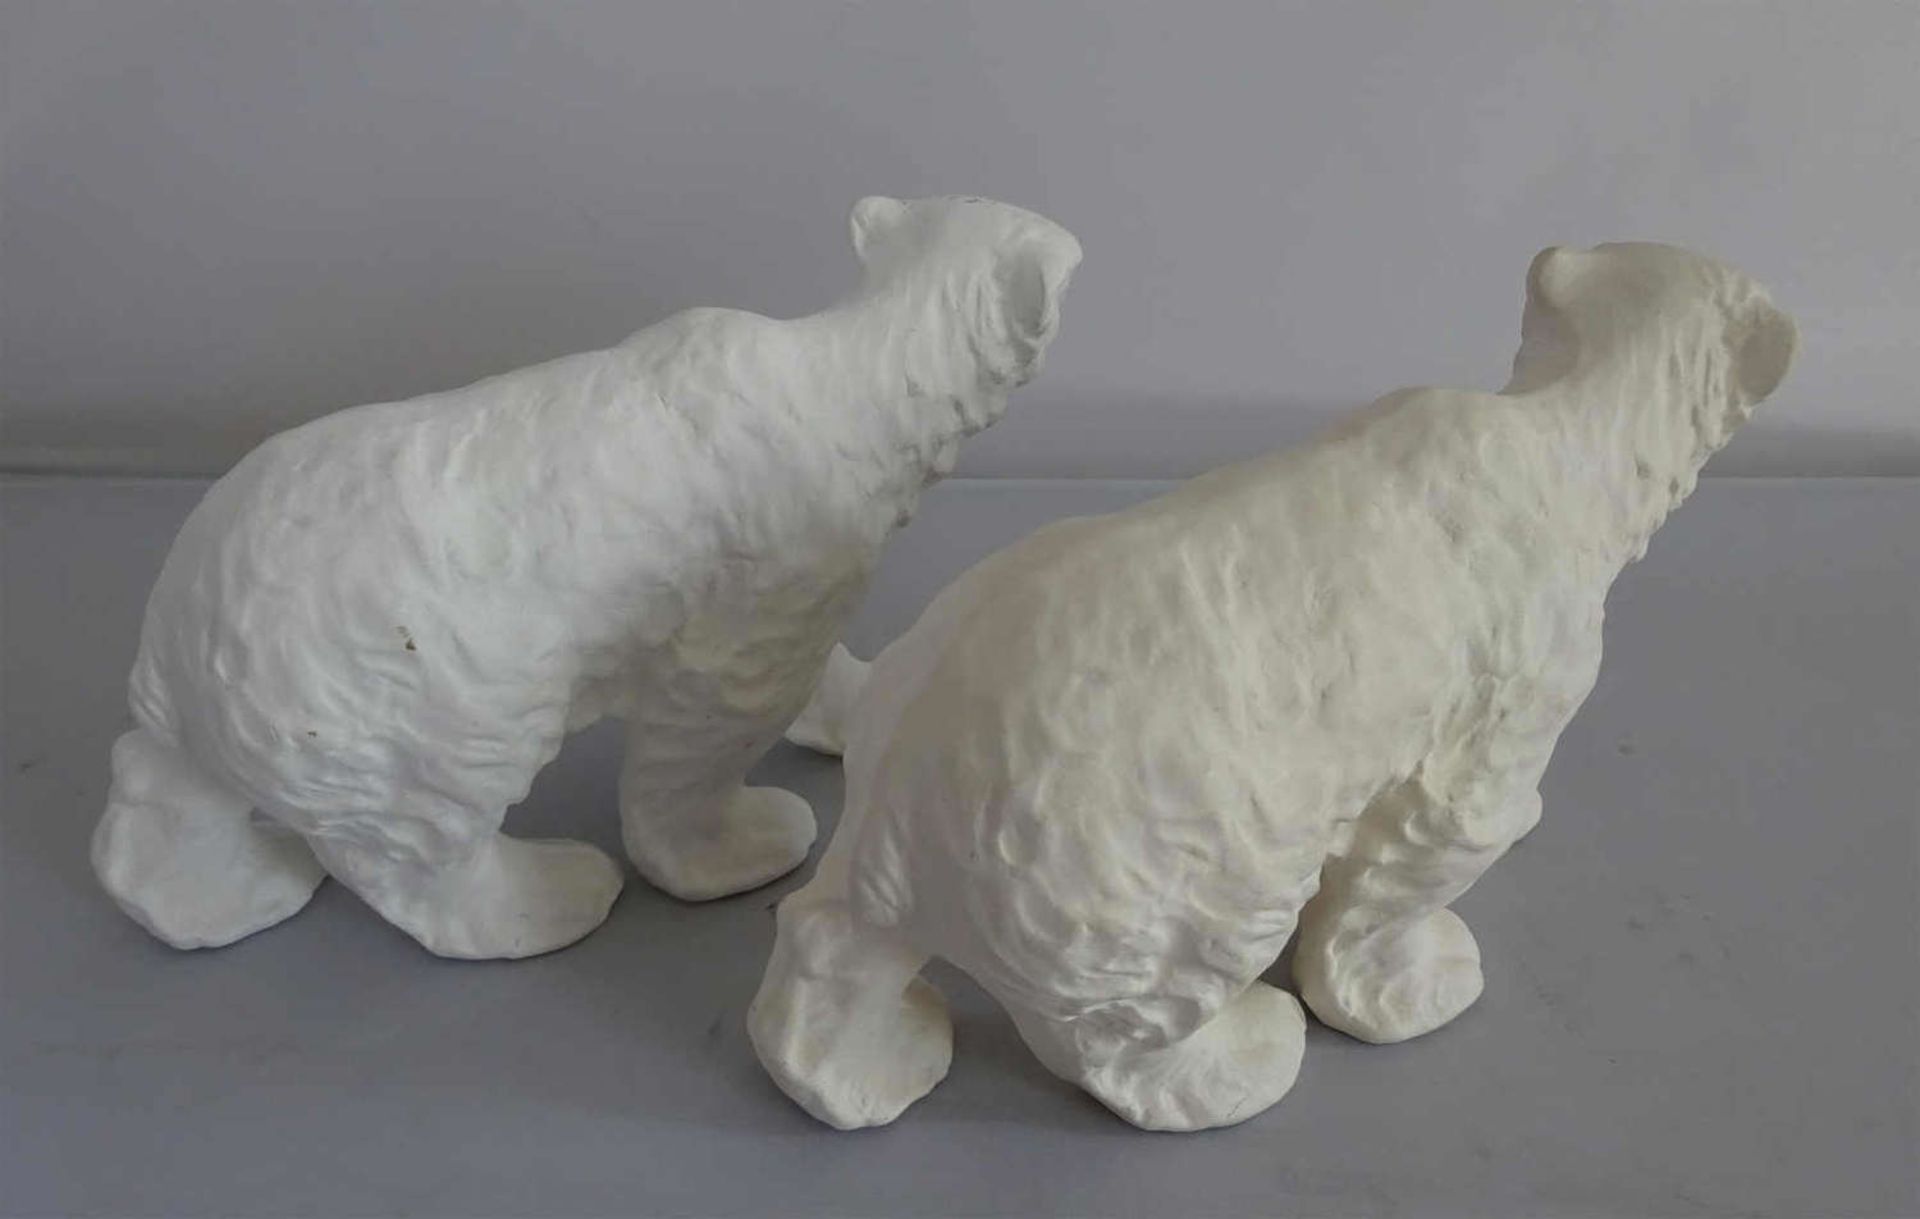 2 Gipsfiguren "Eisbären" Frankenthaler Modelformen, höhe ca. 7 cm, breite ca. 12 cm2 gypsum - Bild 2 aus 2